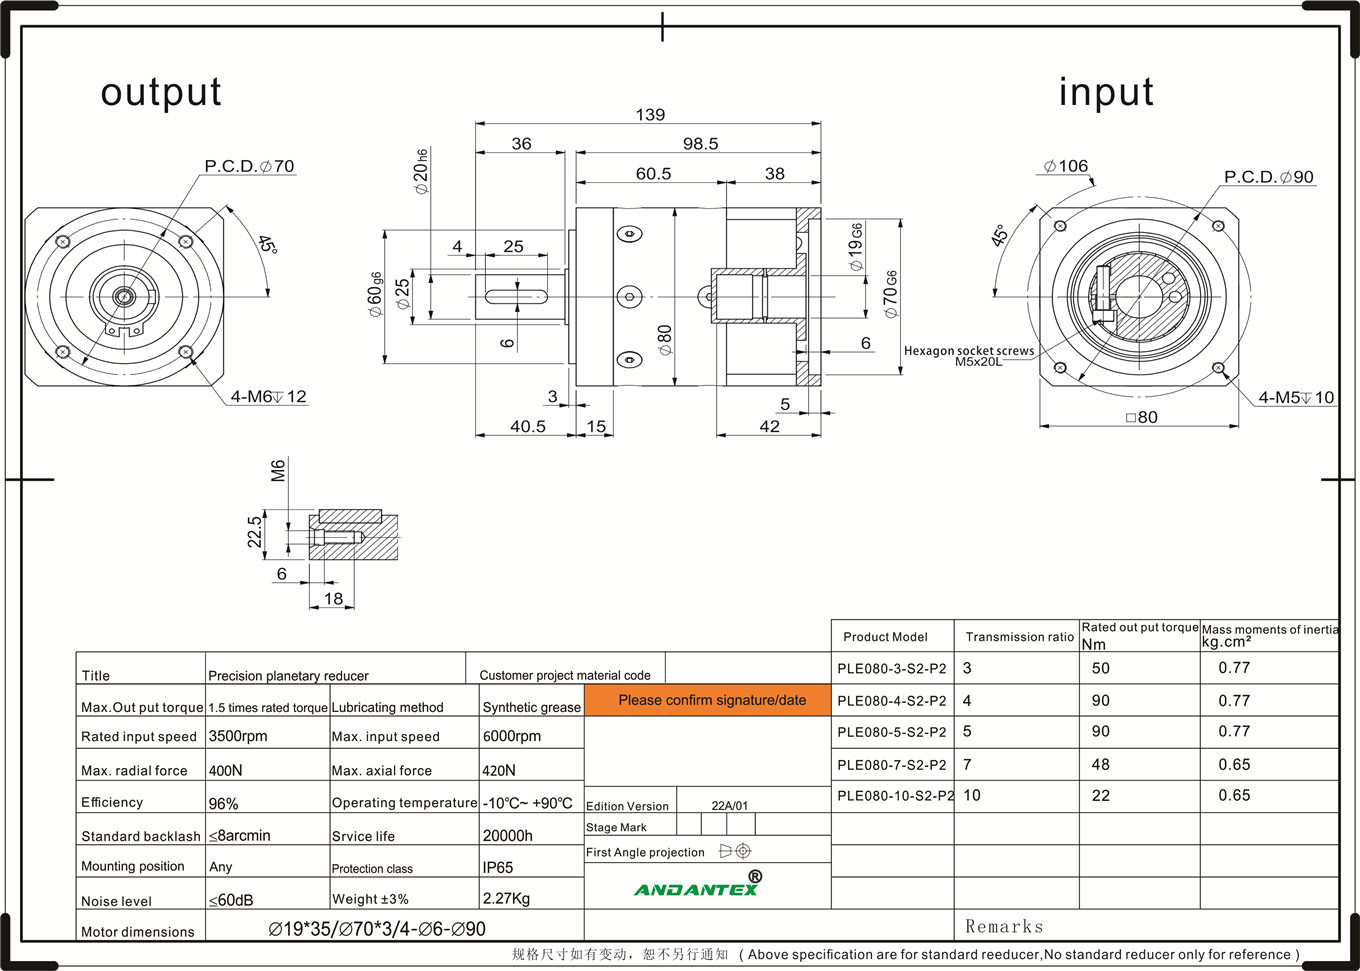 Andantex ple080-7-s2-p2 riduttore di serie standard in l'equipaggiu di trasfurmazioni alimentari-01